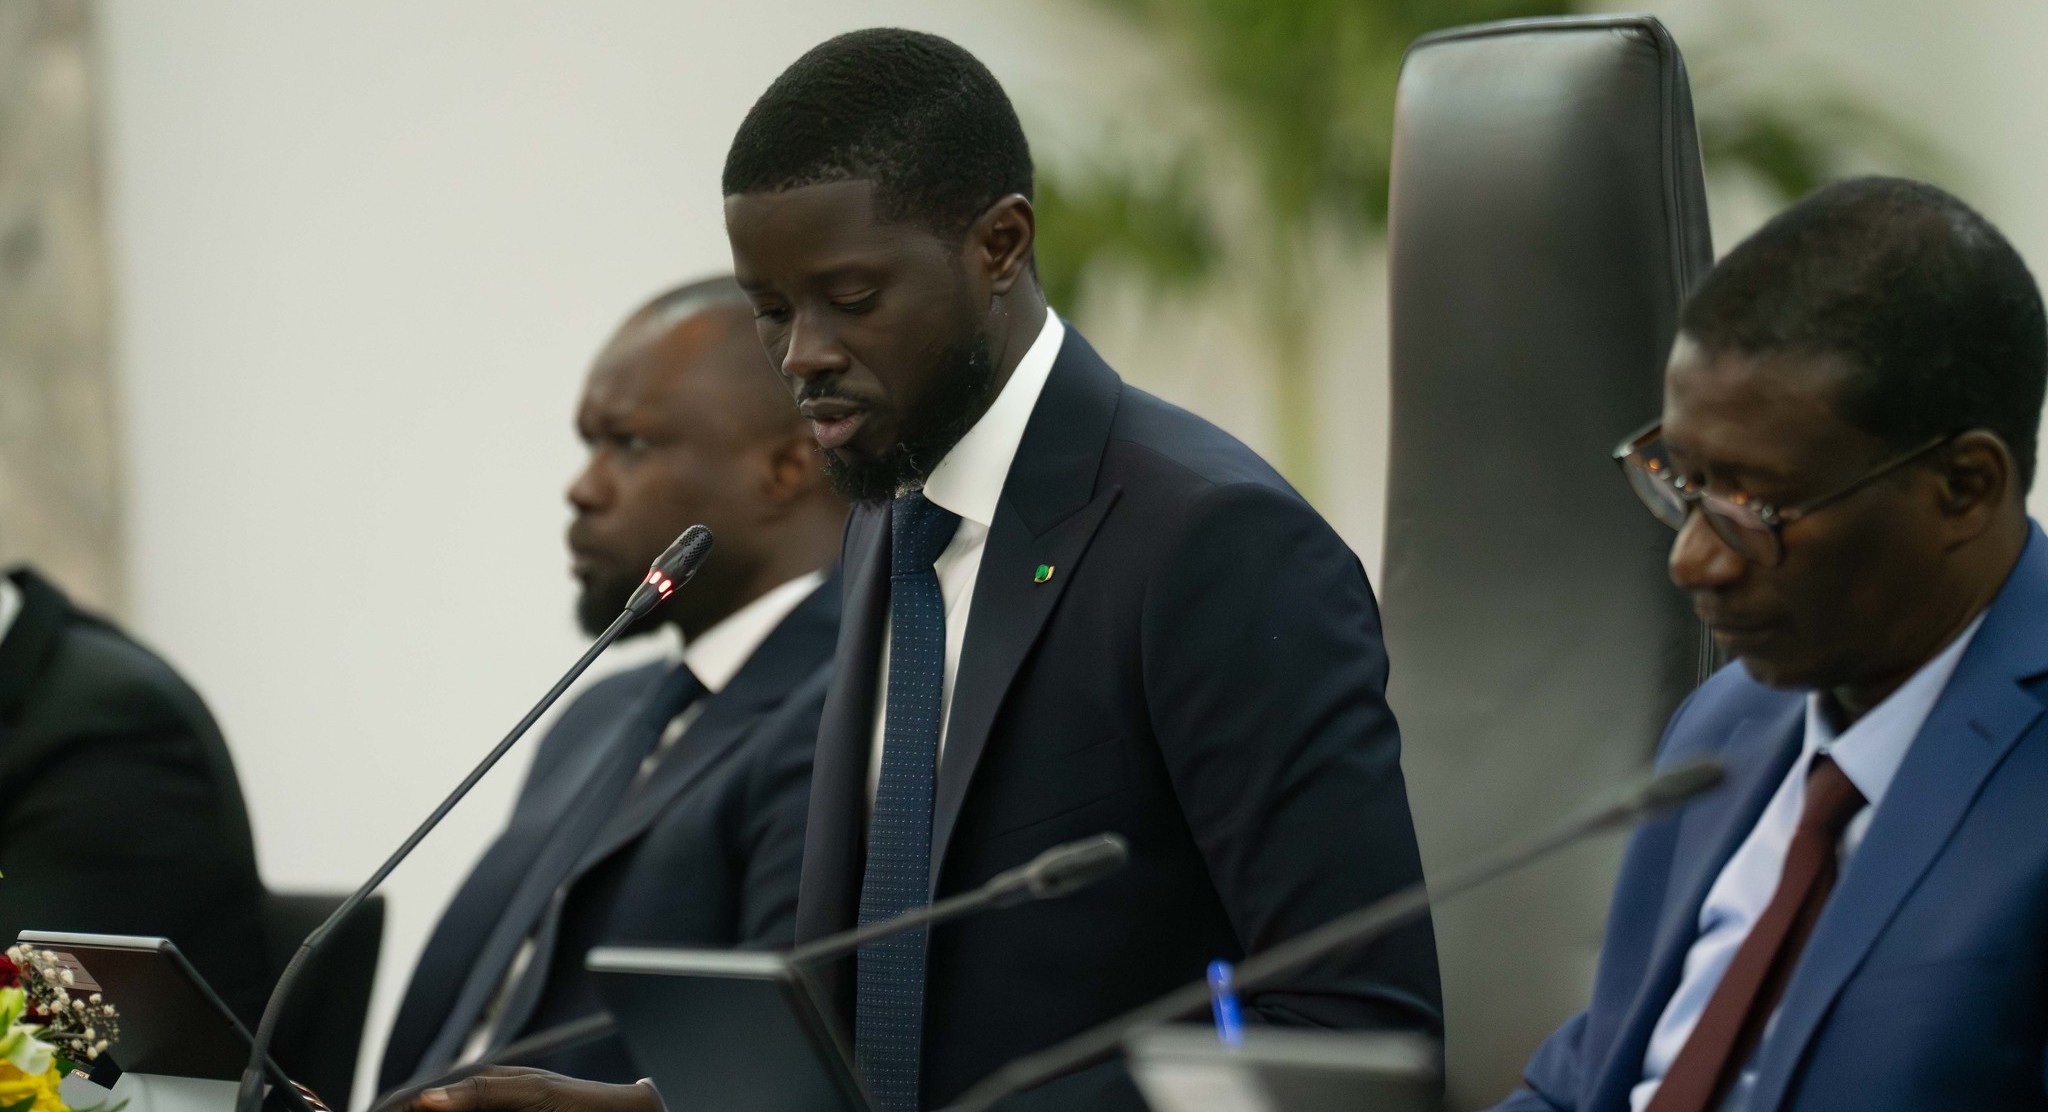 Kako Nubukpo : "quand le président du Sénégal remet en question le franc CFA, le sujet devient crédible"